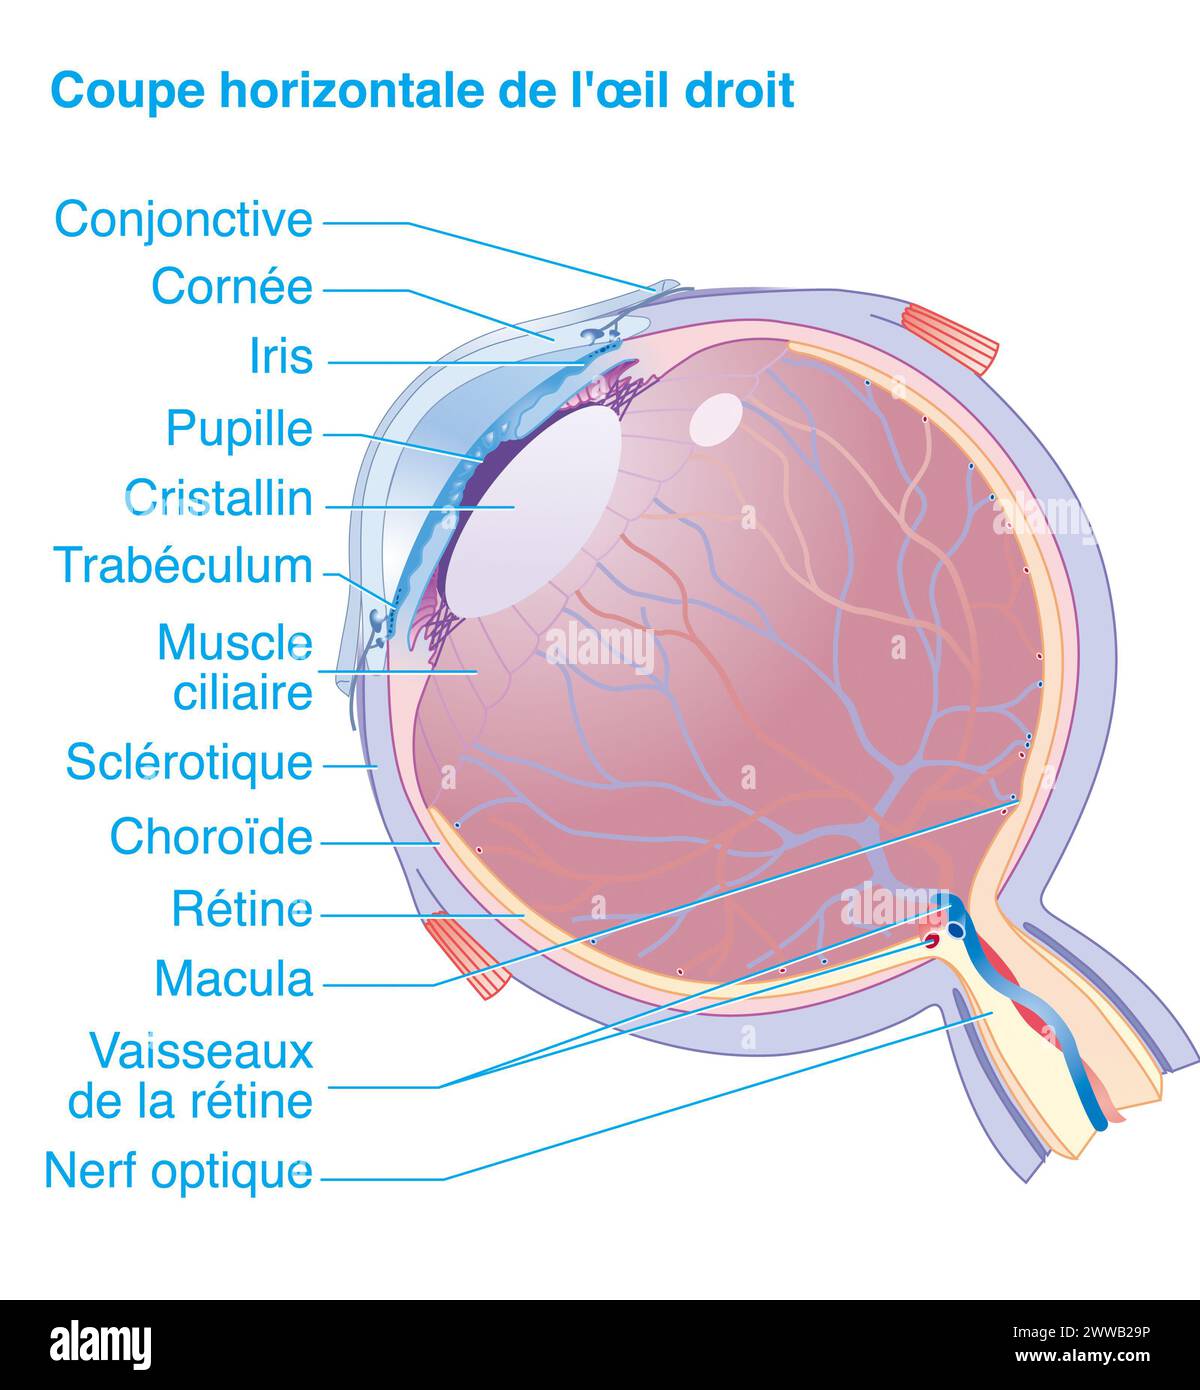 Horizontaler Abschnitt des rechten Auges. Anatomie des rechten Auges, horizontaler Abschnitt, der alle Hauptstrukturen des Auges zeigt. Stockfoto